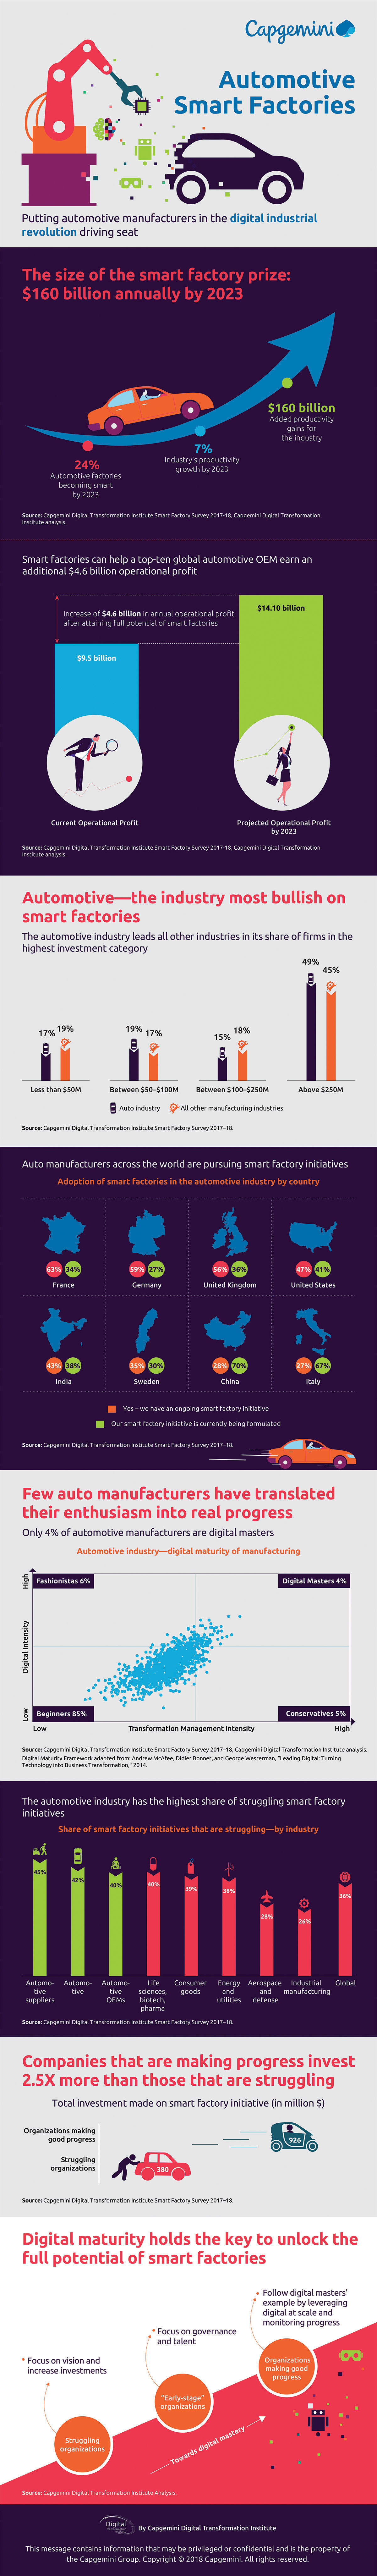 Automotive smart factories_infographic